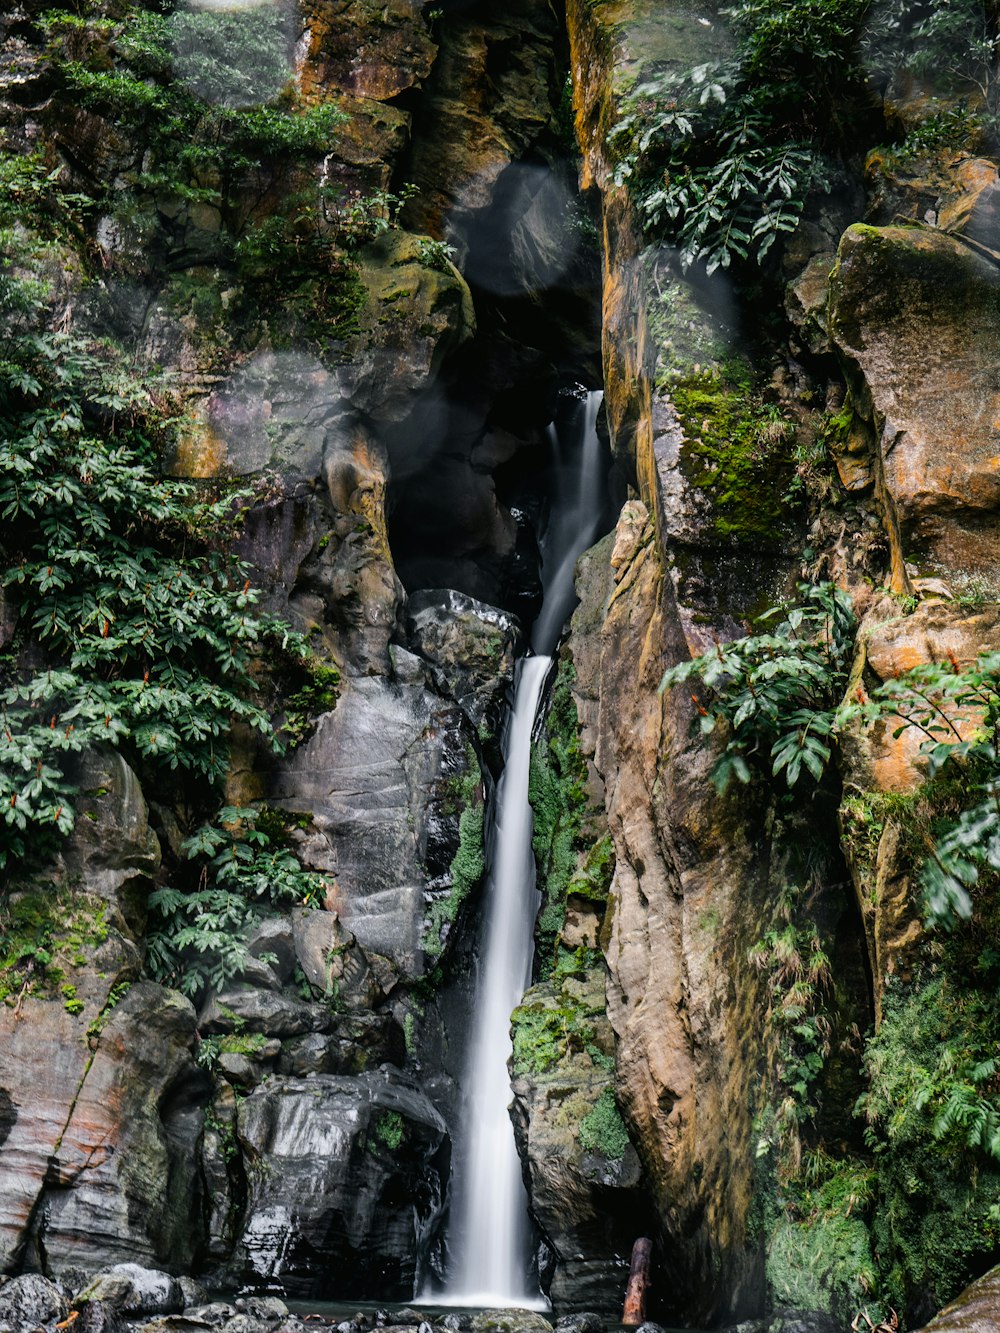 cachoeiras entre a formação rochosa marrom e verde durante o dia